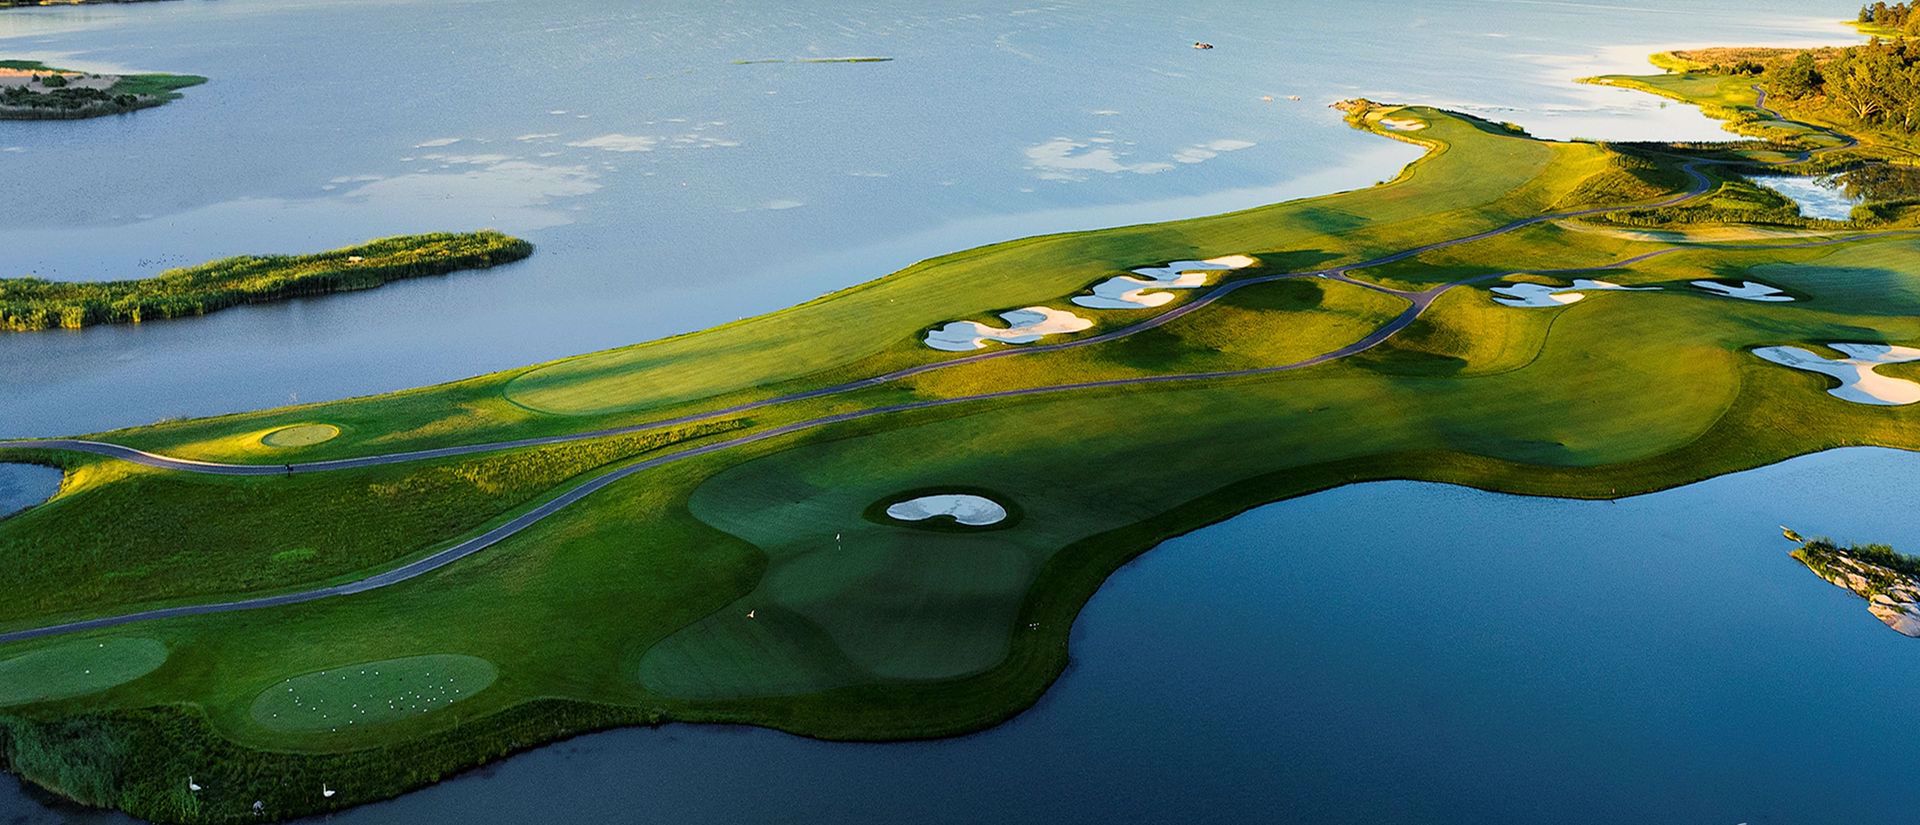 Parcours de golf numéro 1 en Suède